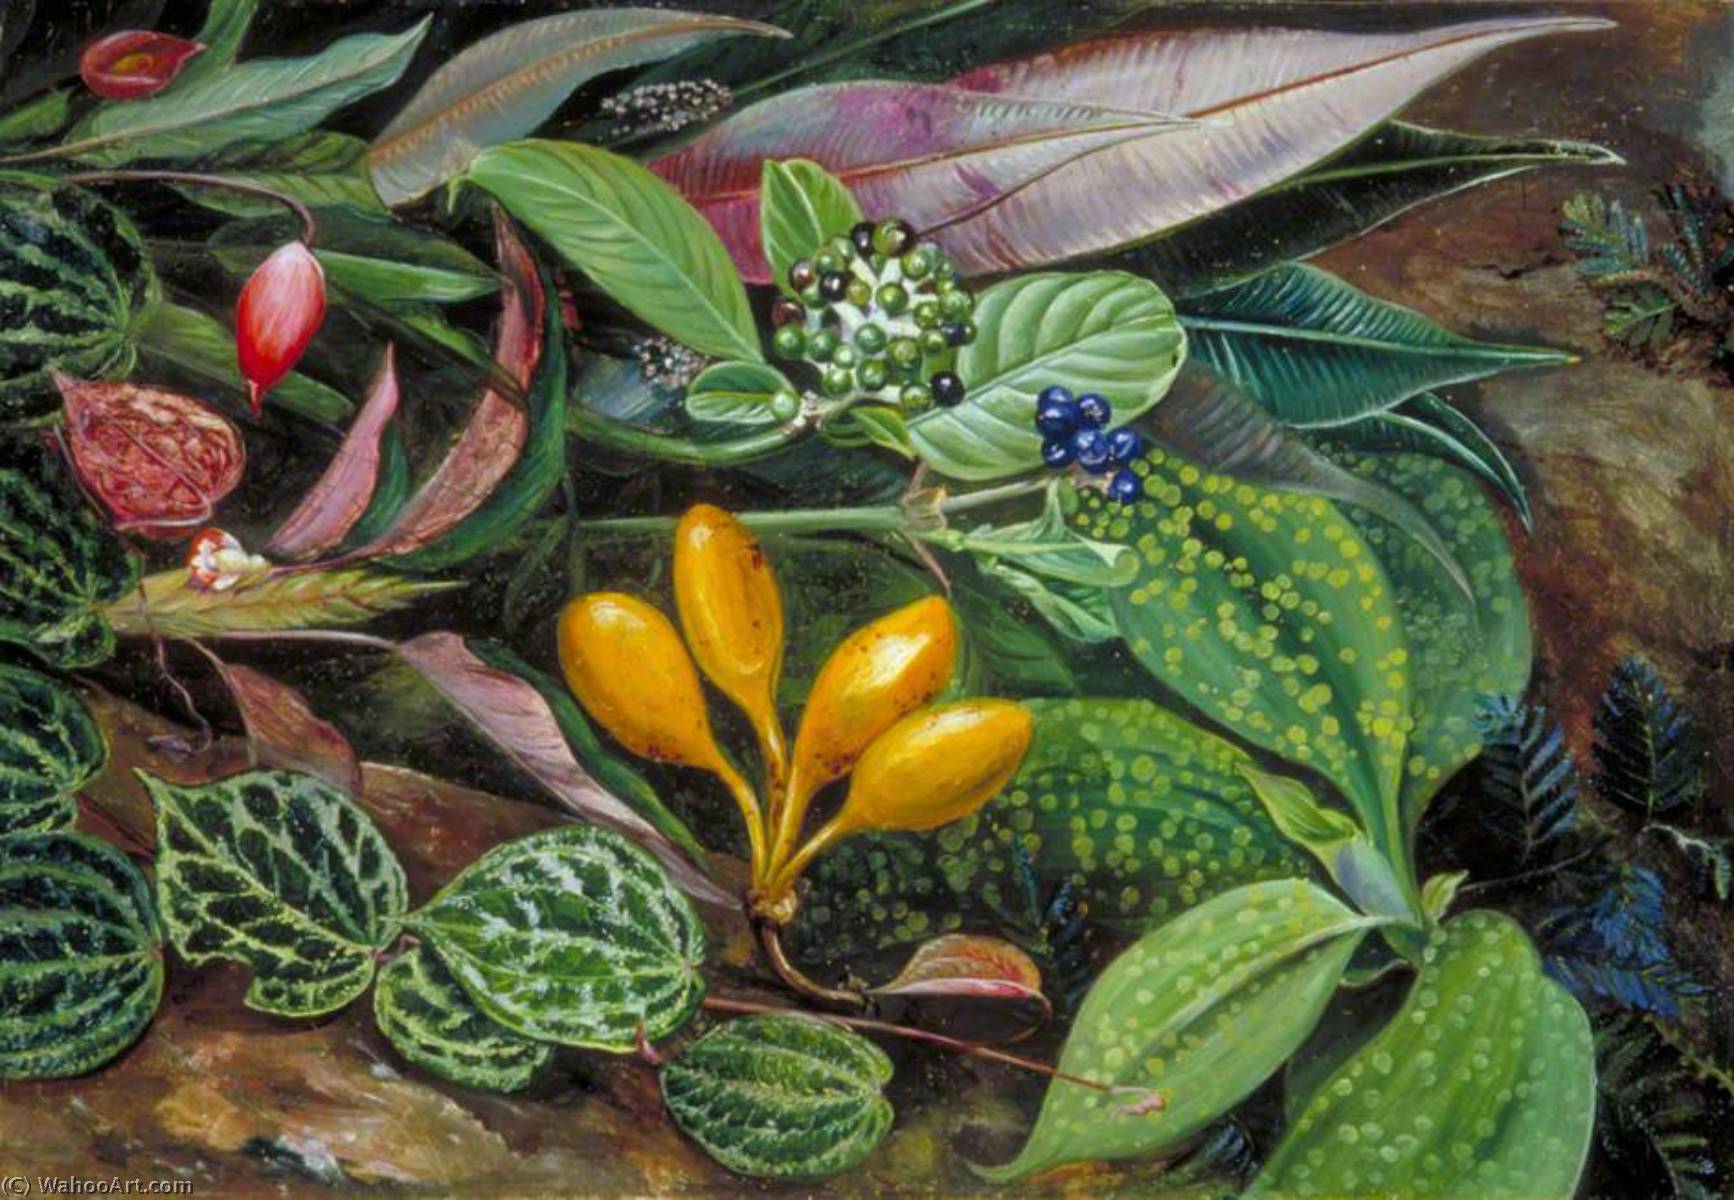 WikiOO.org - Enciklopedija likovnih umjetnosti - Slikarstvo, umjetnička djela Marianne North - Curious Plants from the Forest of Matang, Sarawak, Borneo